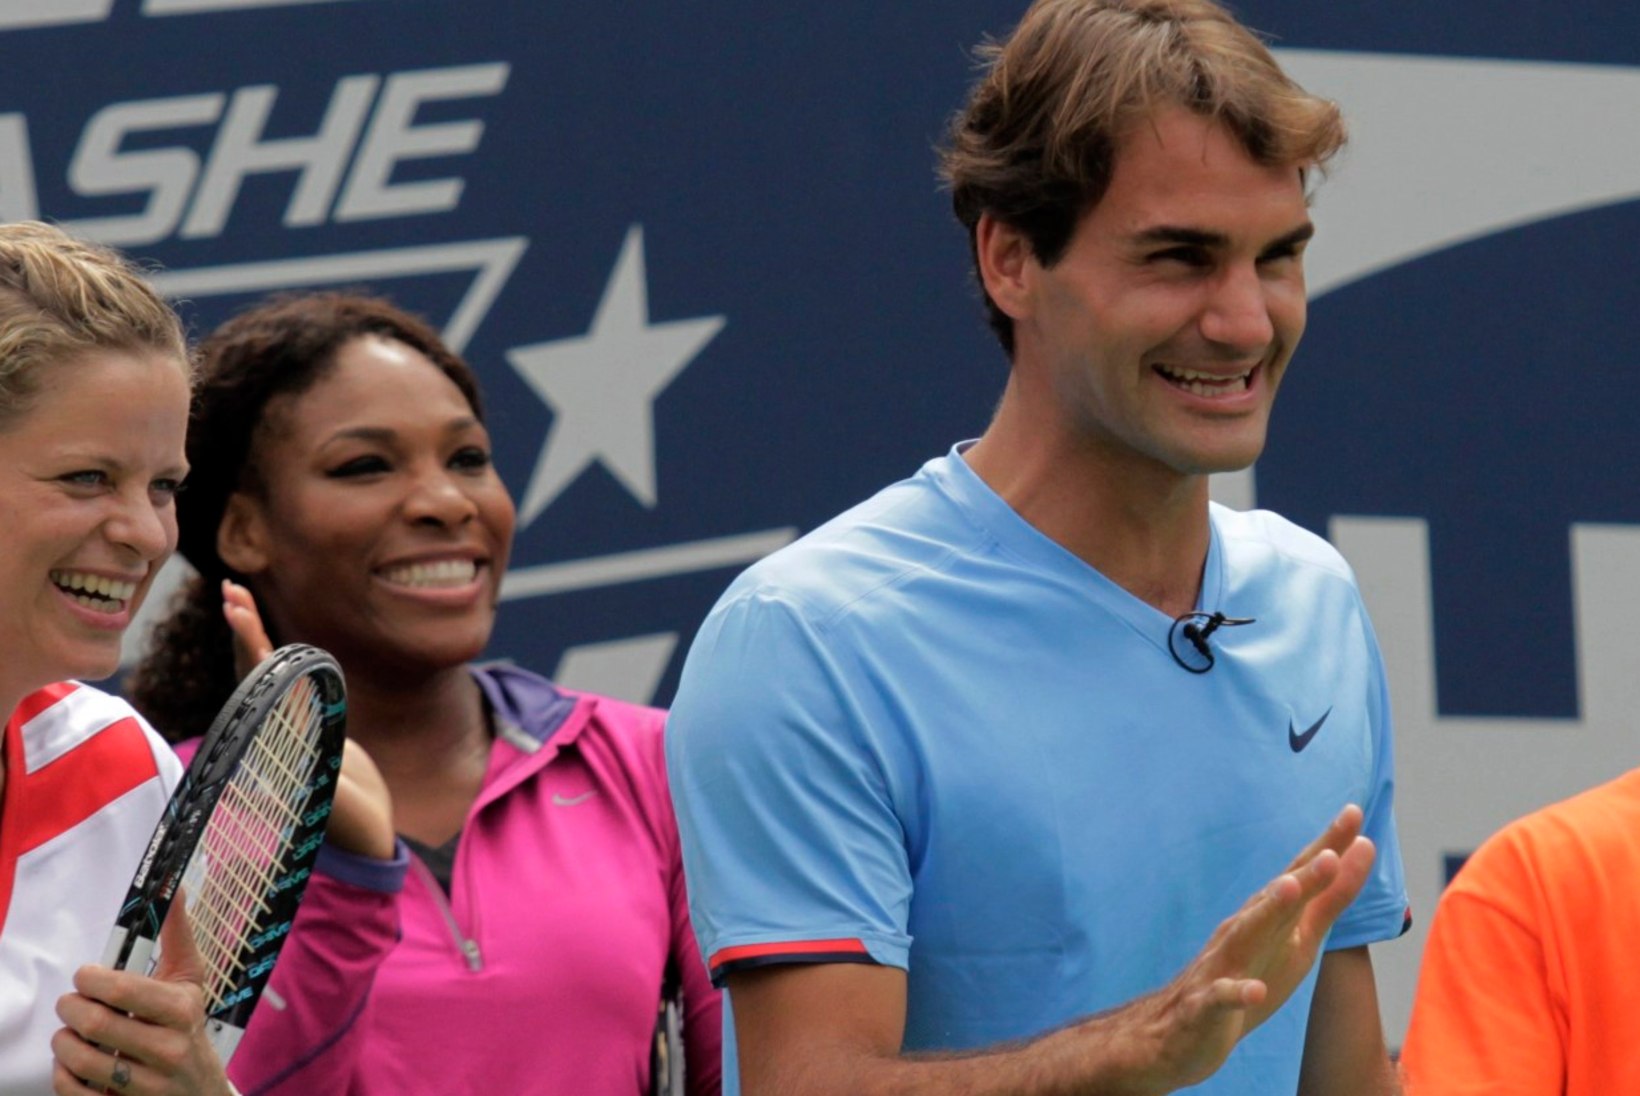 Kas tenniselegendid Federer ja Williams võivad koroona tõttu karjääri lõpetada?